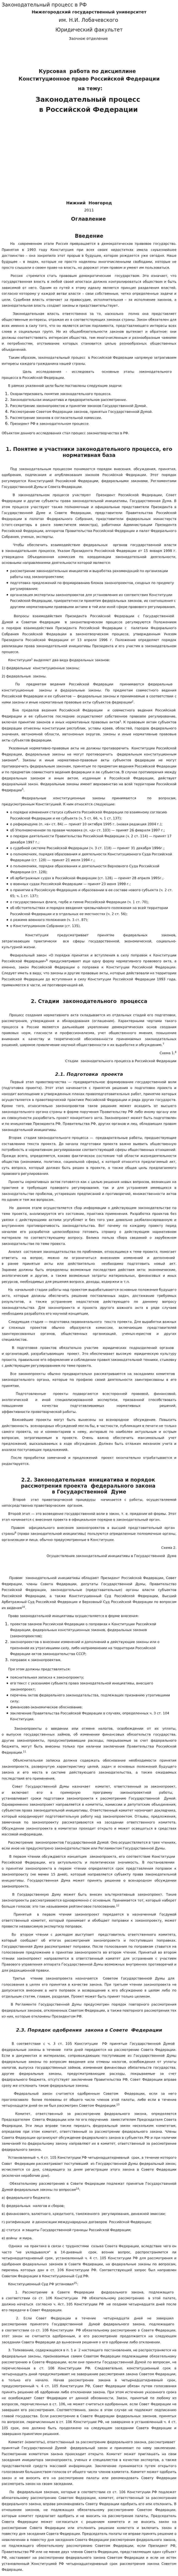 Законодательный процесс в РФ. 2